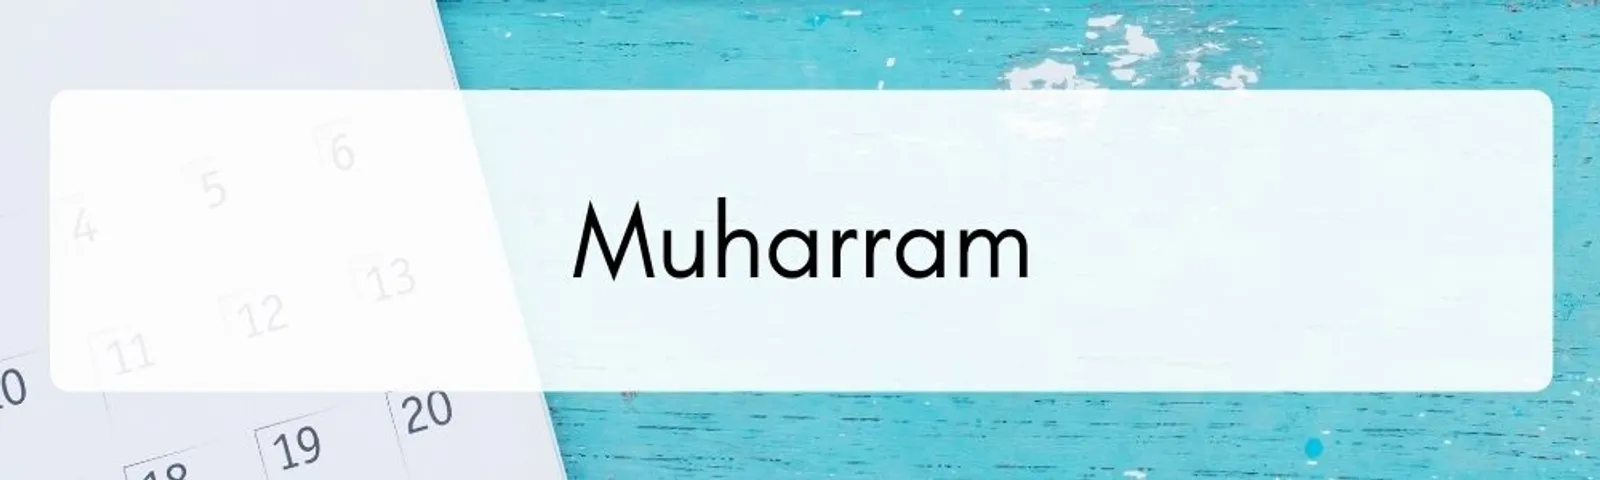 Mengenal 12 Nama Bulan dalam Kalender Islam dan Keutamaannya